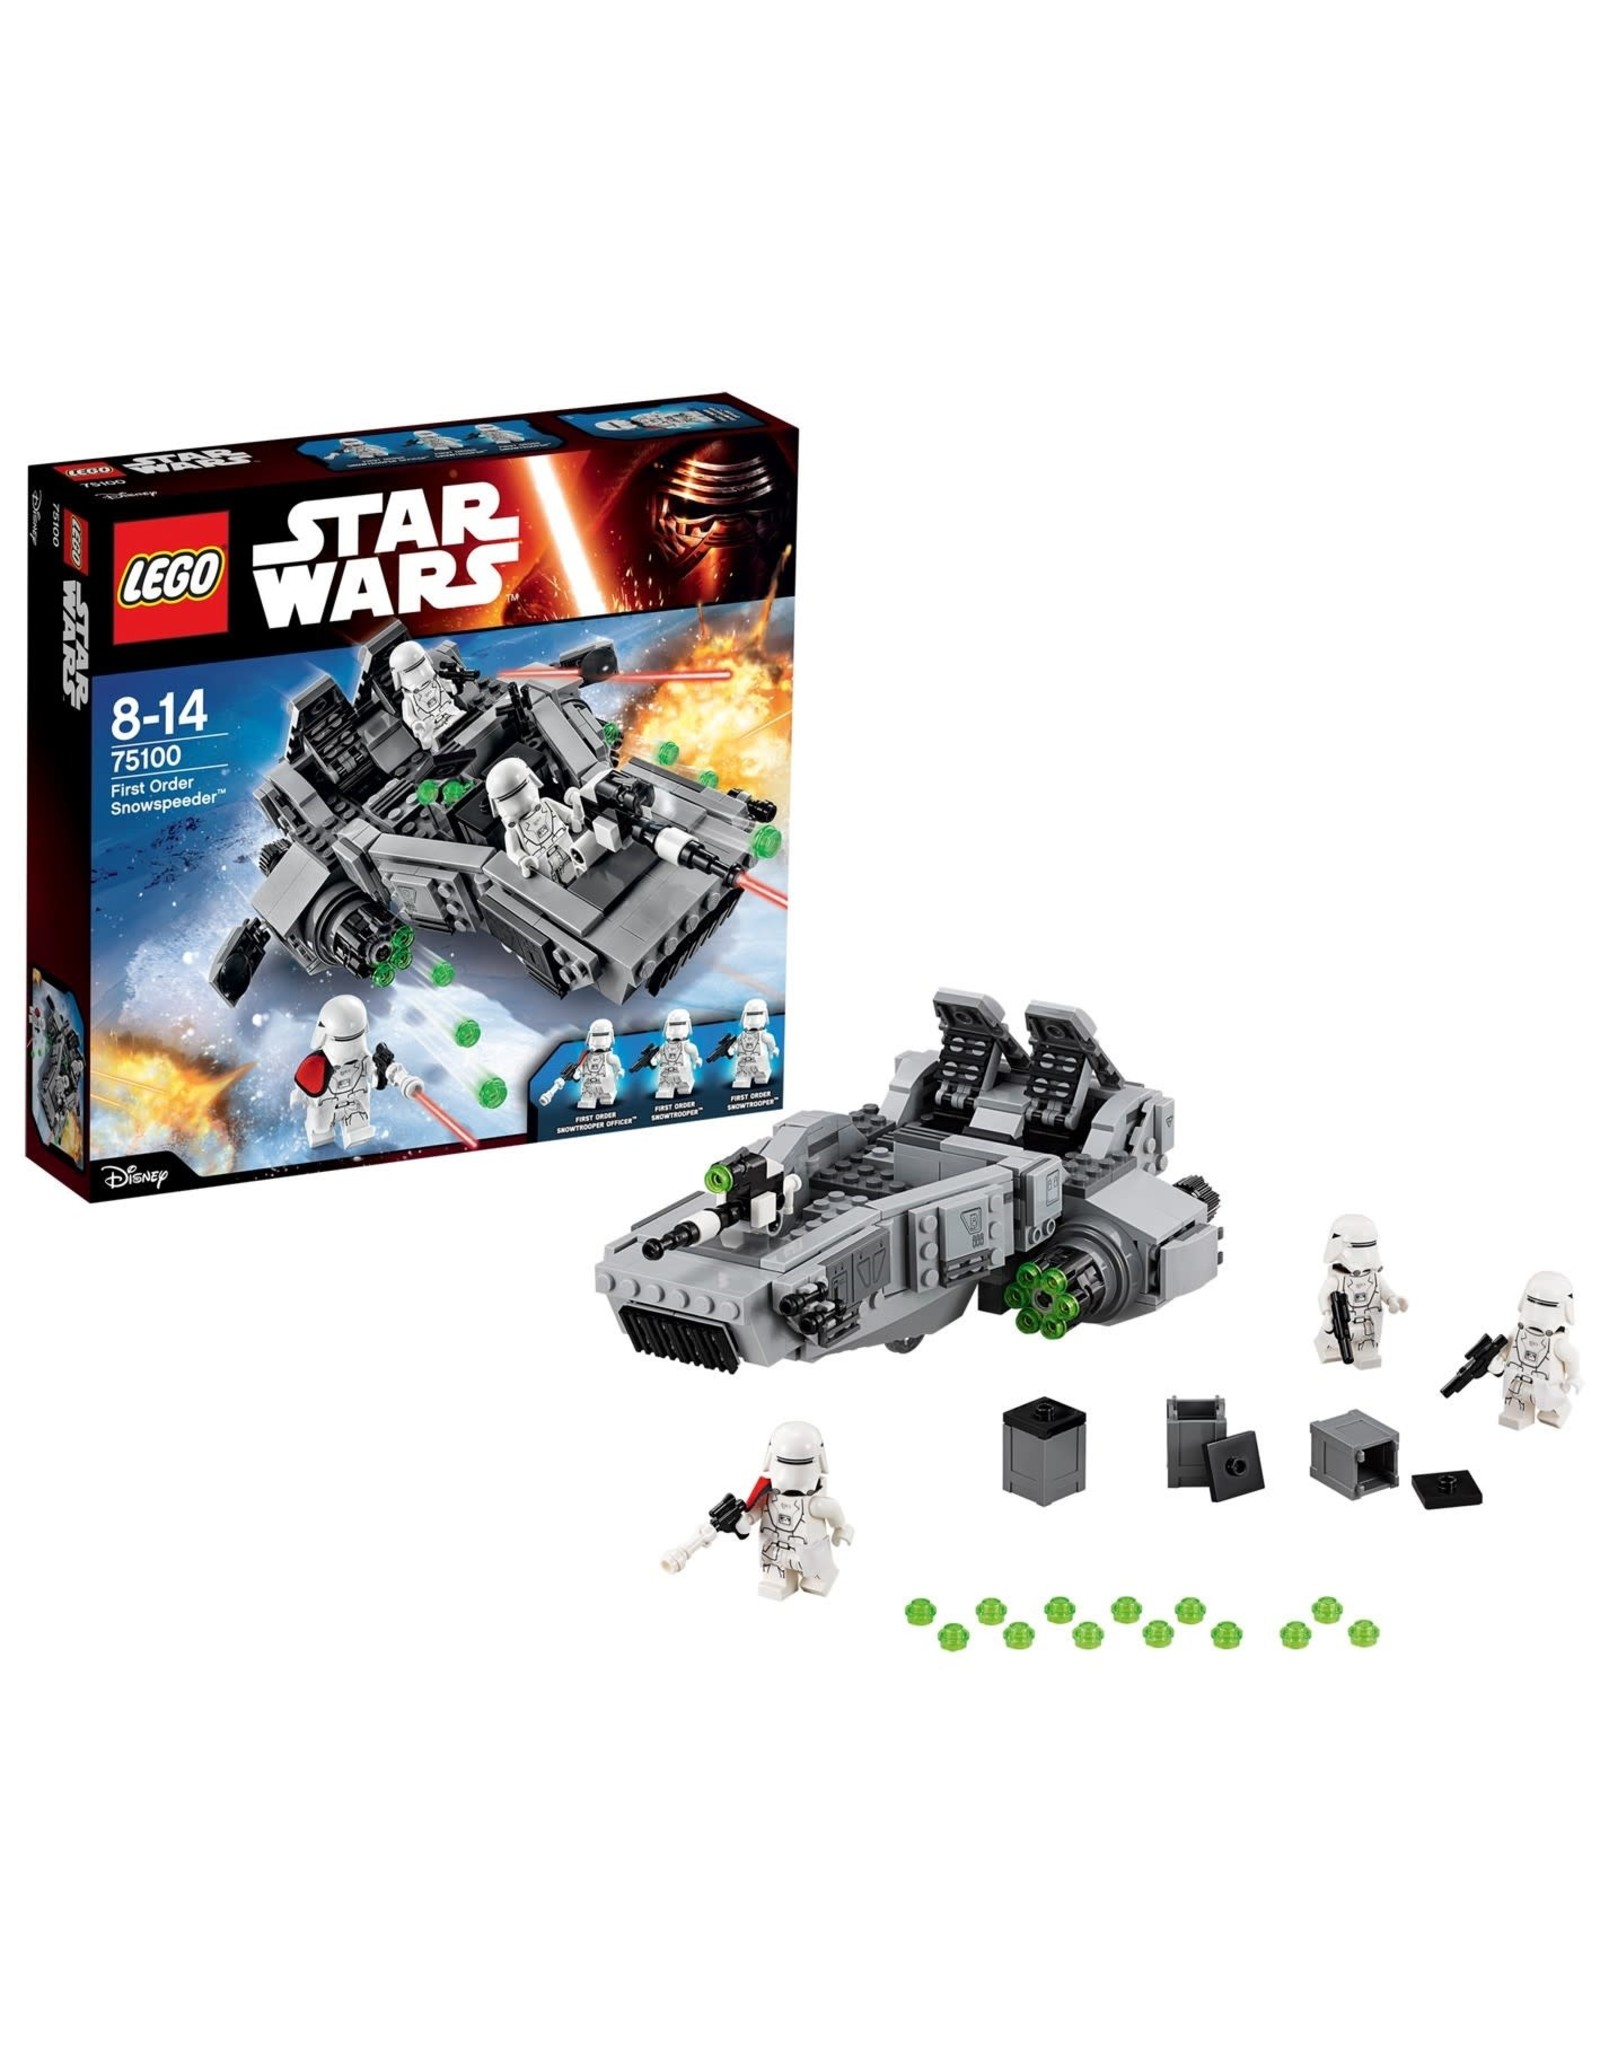 LEGO Lego Star Wars 75100 First Order Snowspeeder